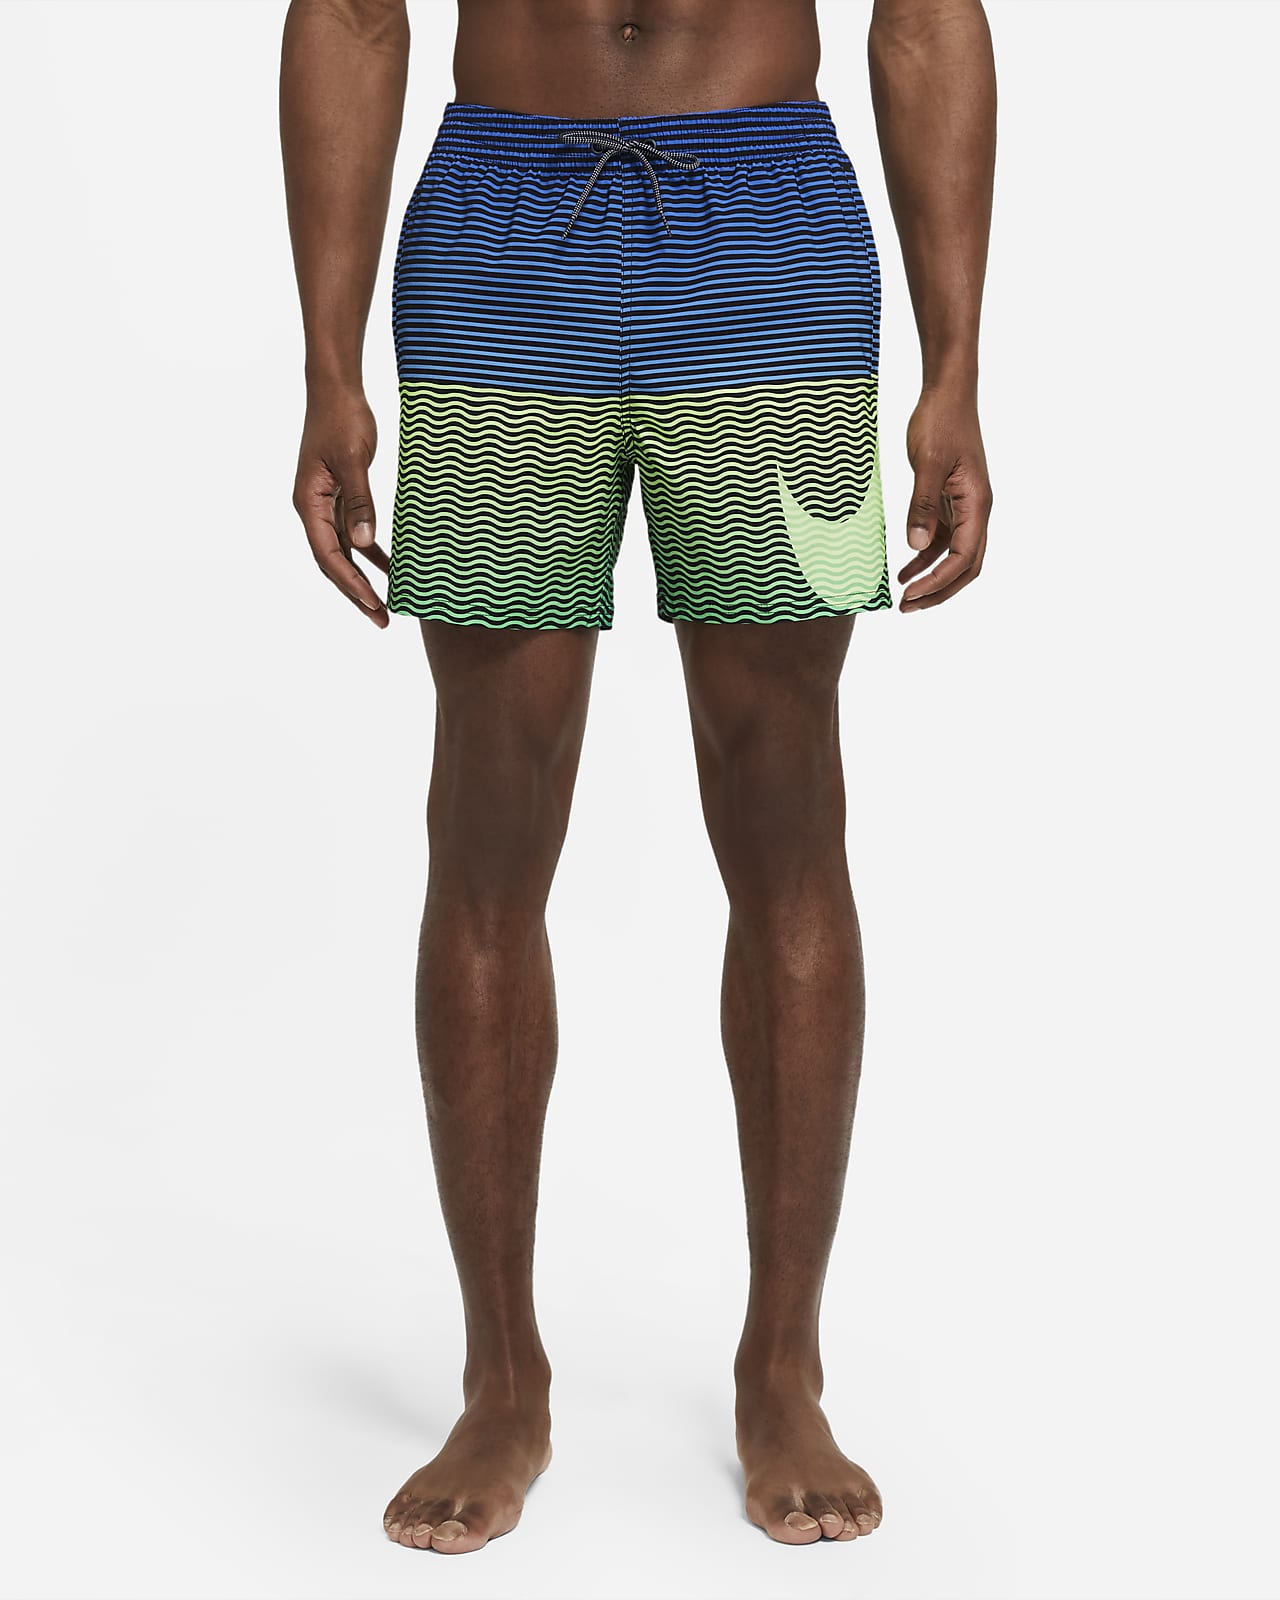 Nike Vital Men's 13cm (approx.) Swimming Trunks